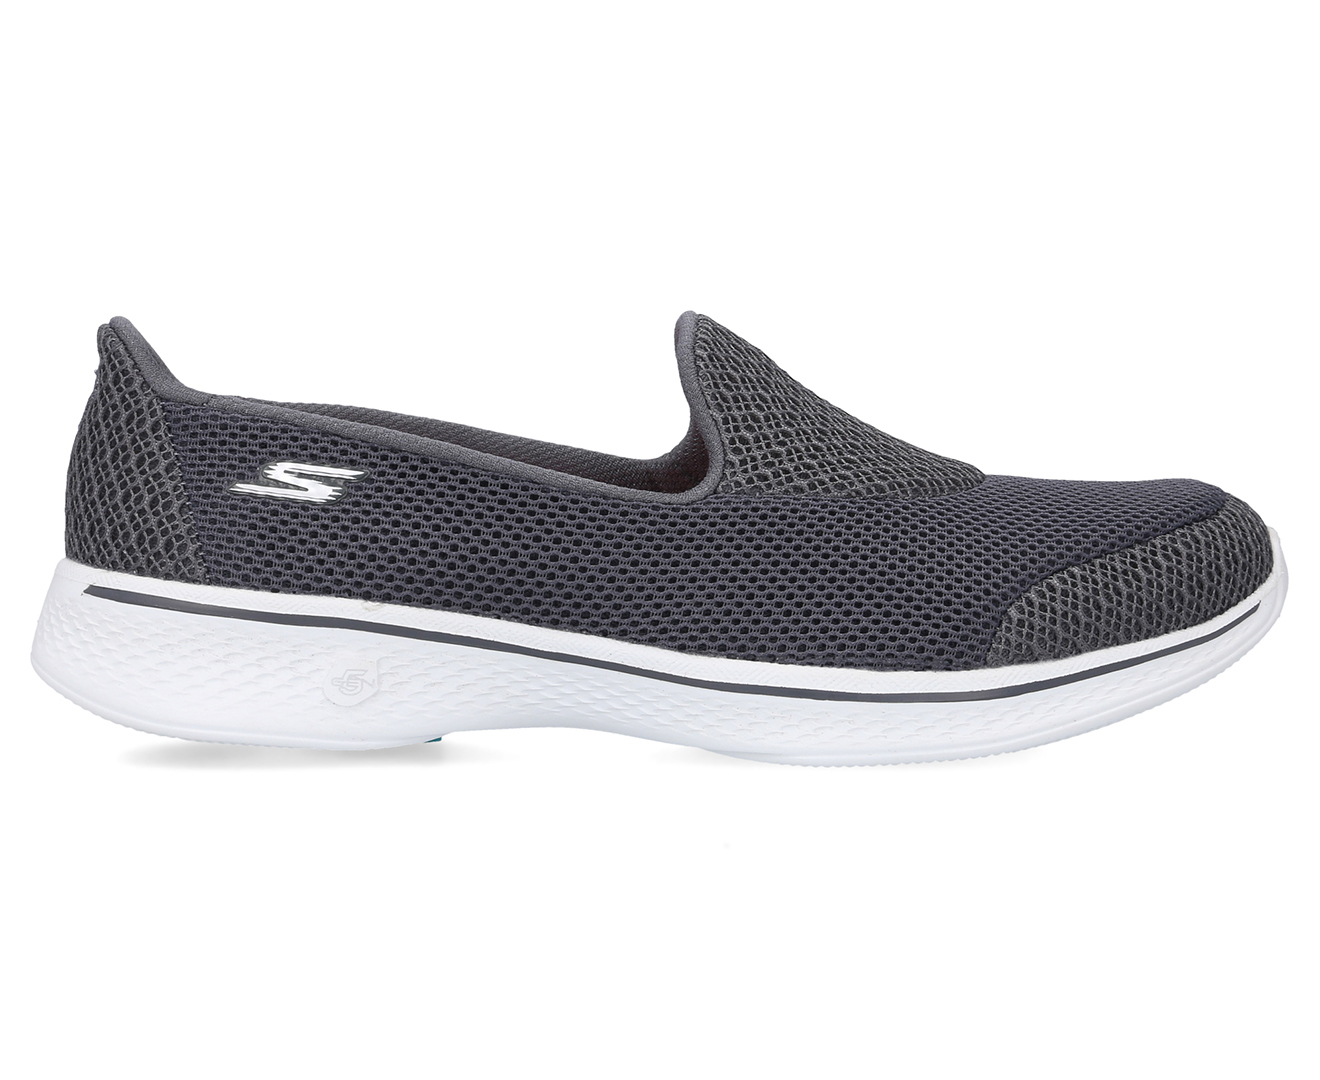 Skechers Women's Go Walk 4 Propel Slip-On Sneakers - Charcoal | Www ...